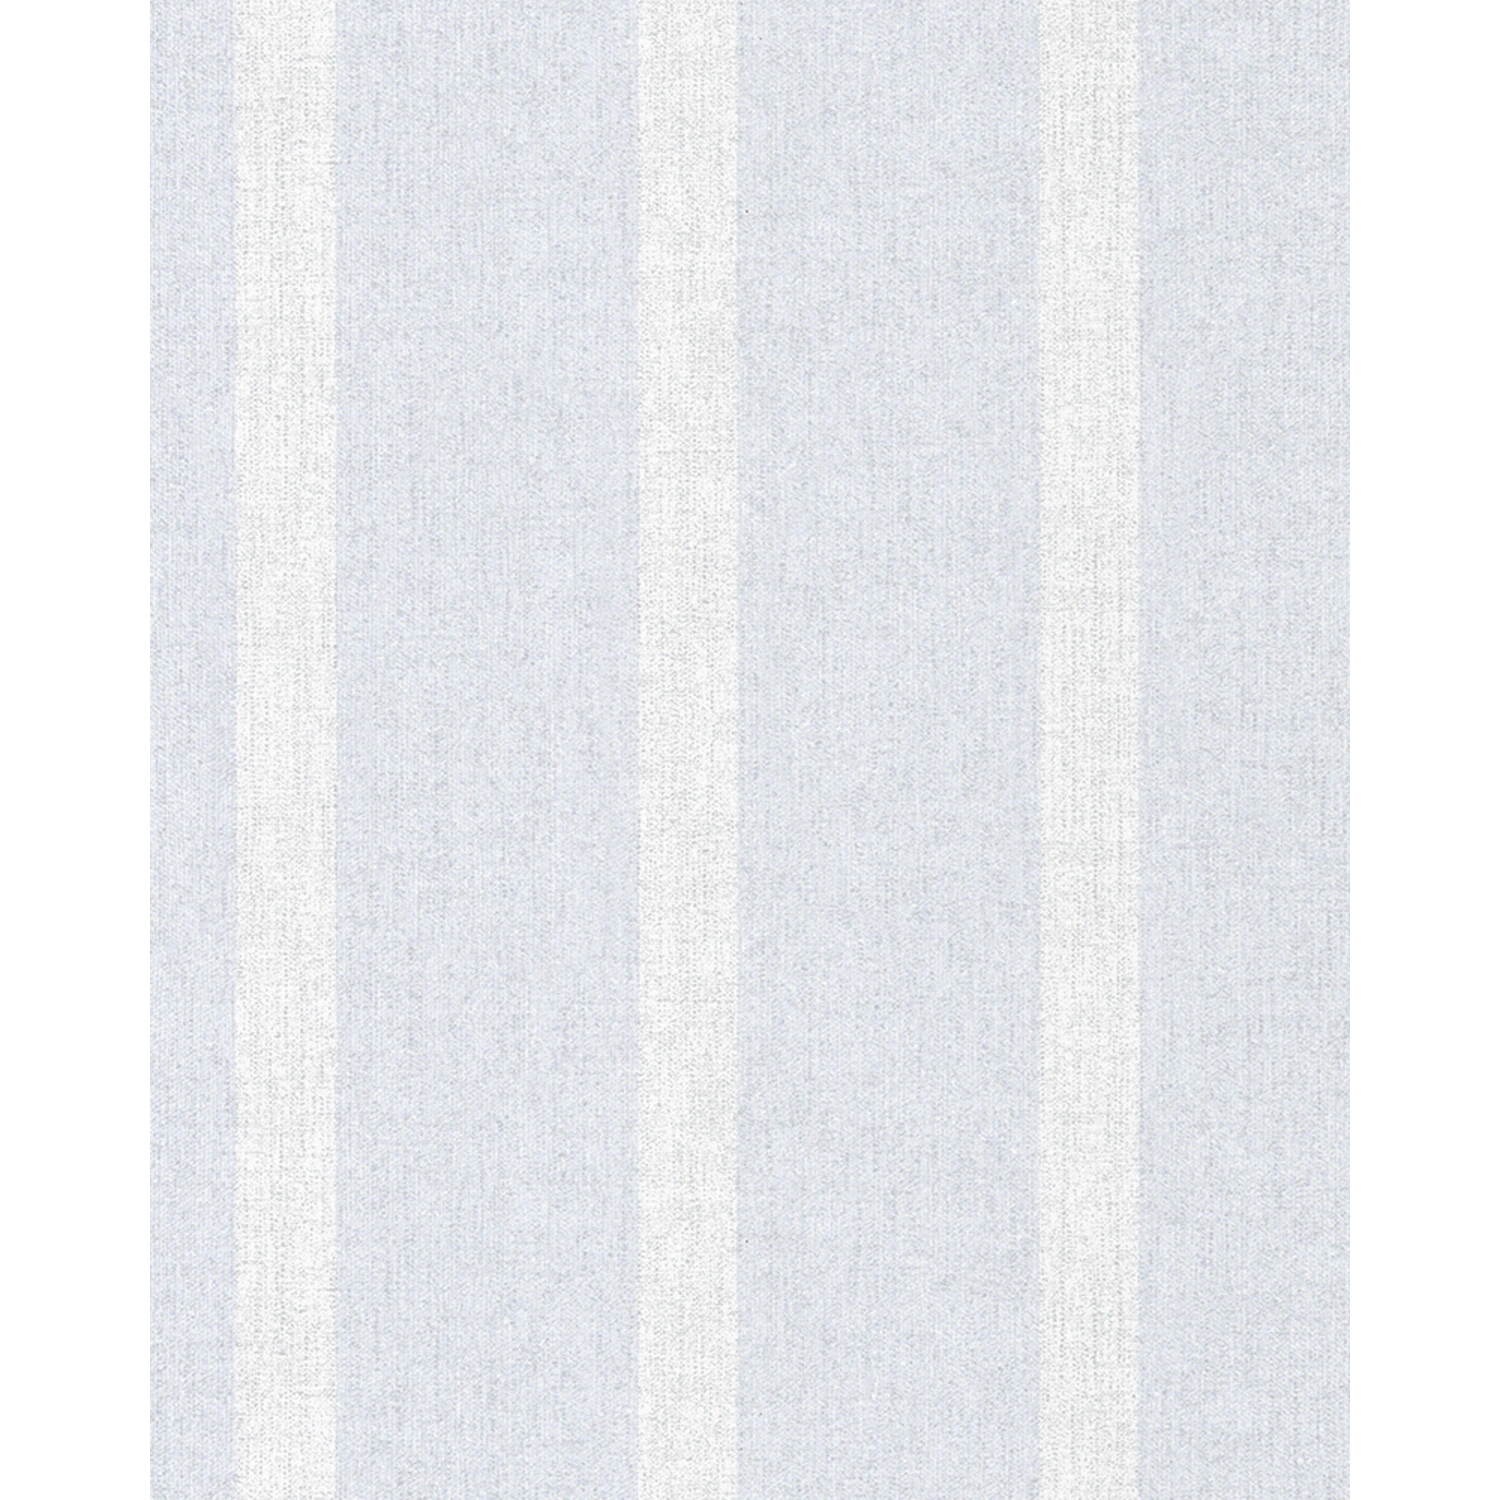 SCHÖNER WOHNEN KOLLEKTION Vliestapete, blau/weiß Streifen, Struktur